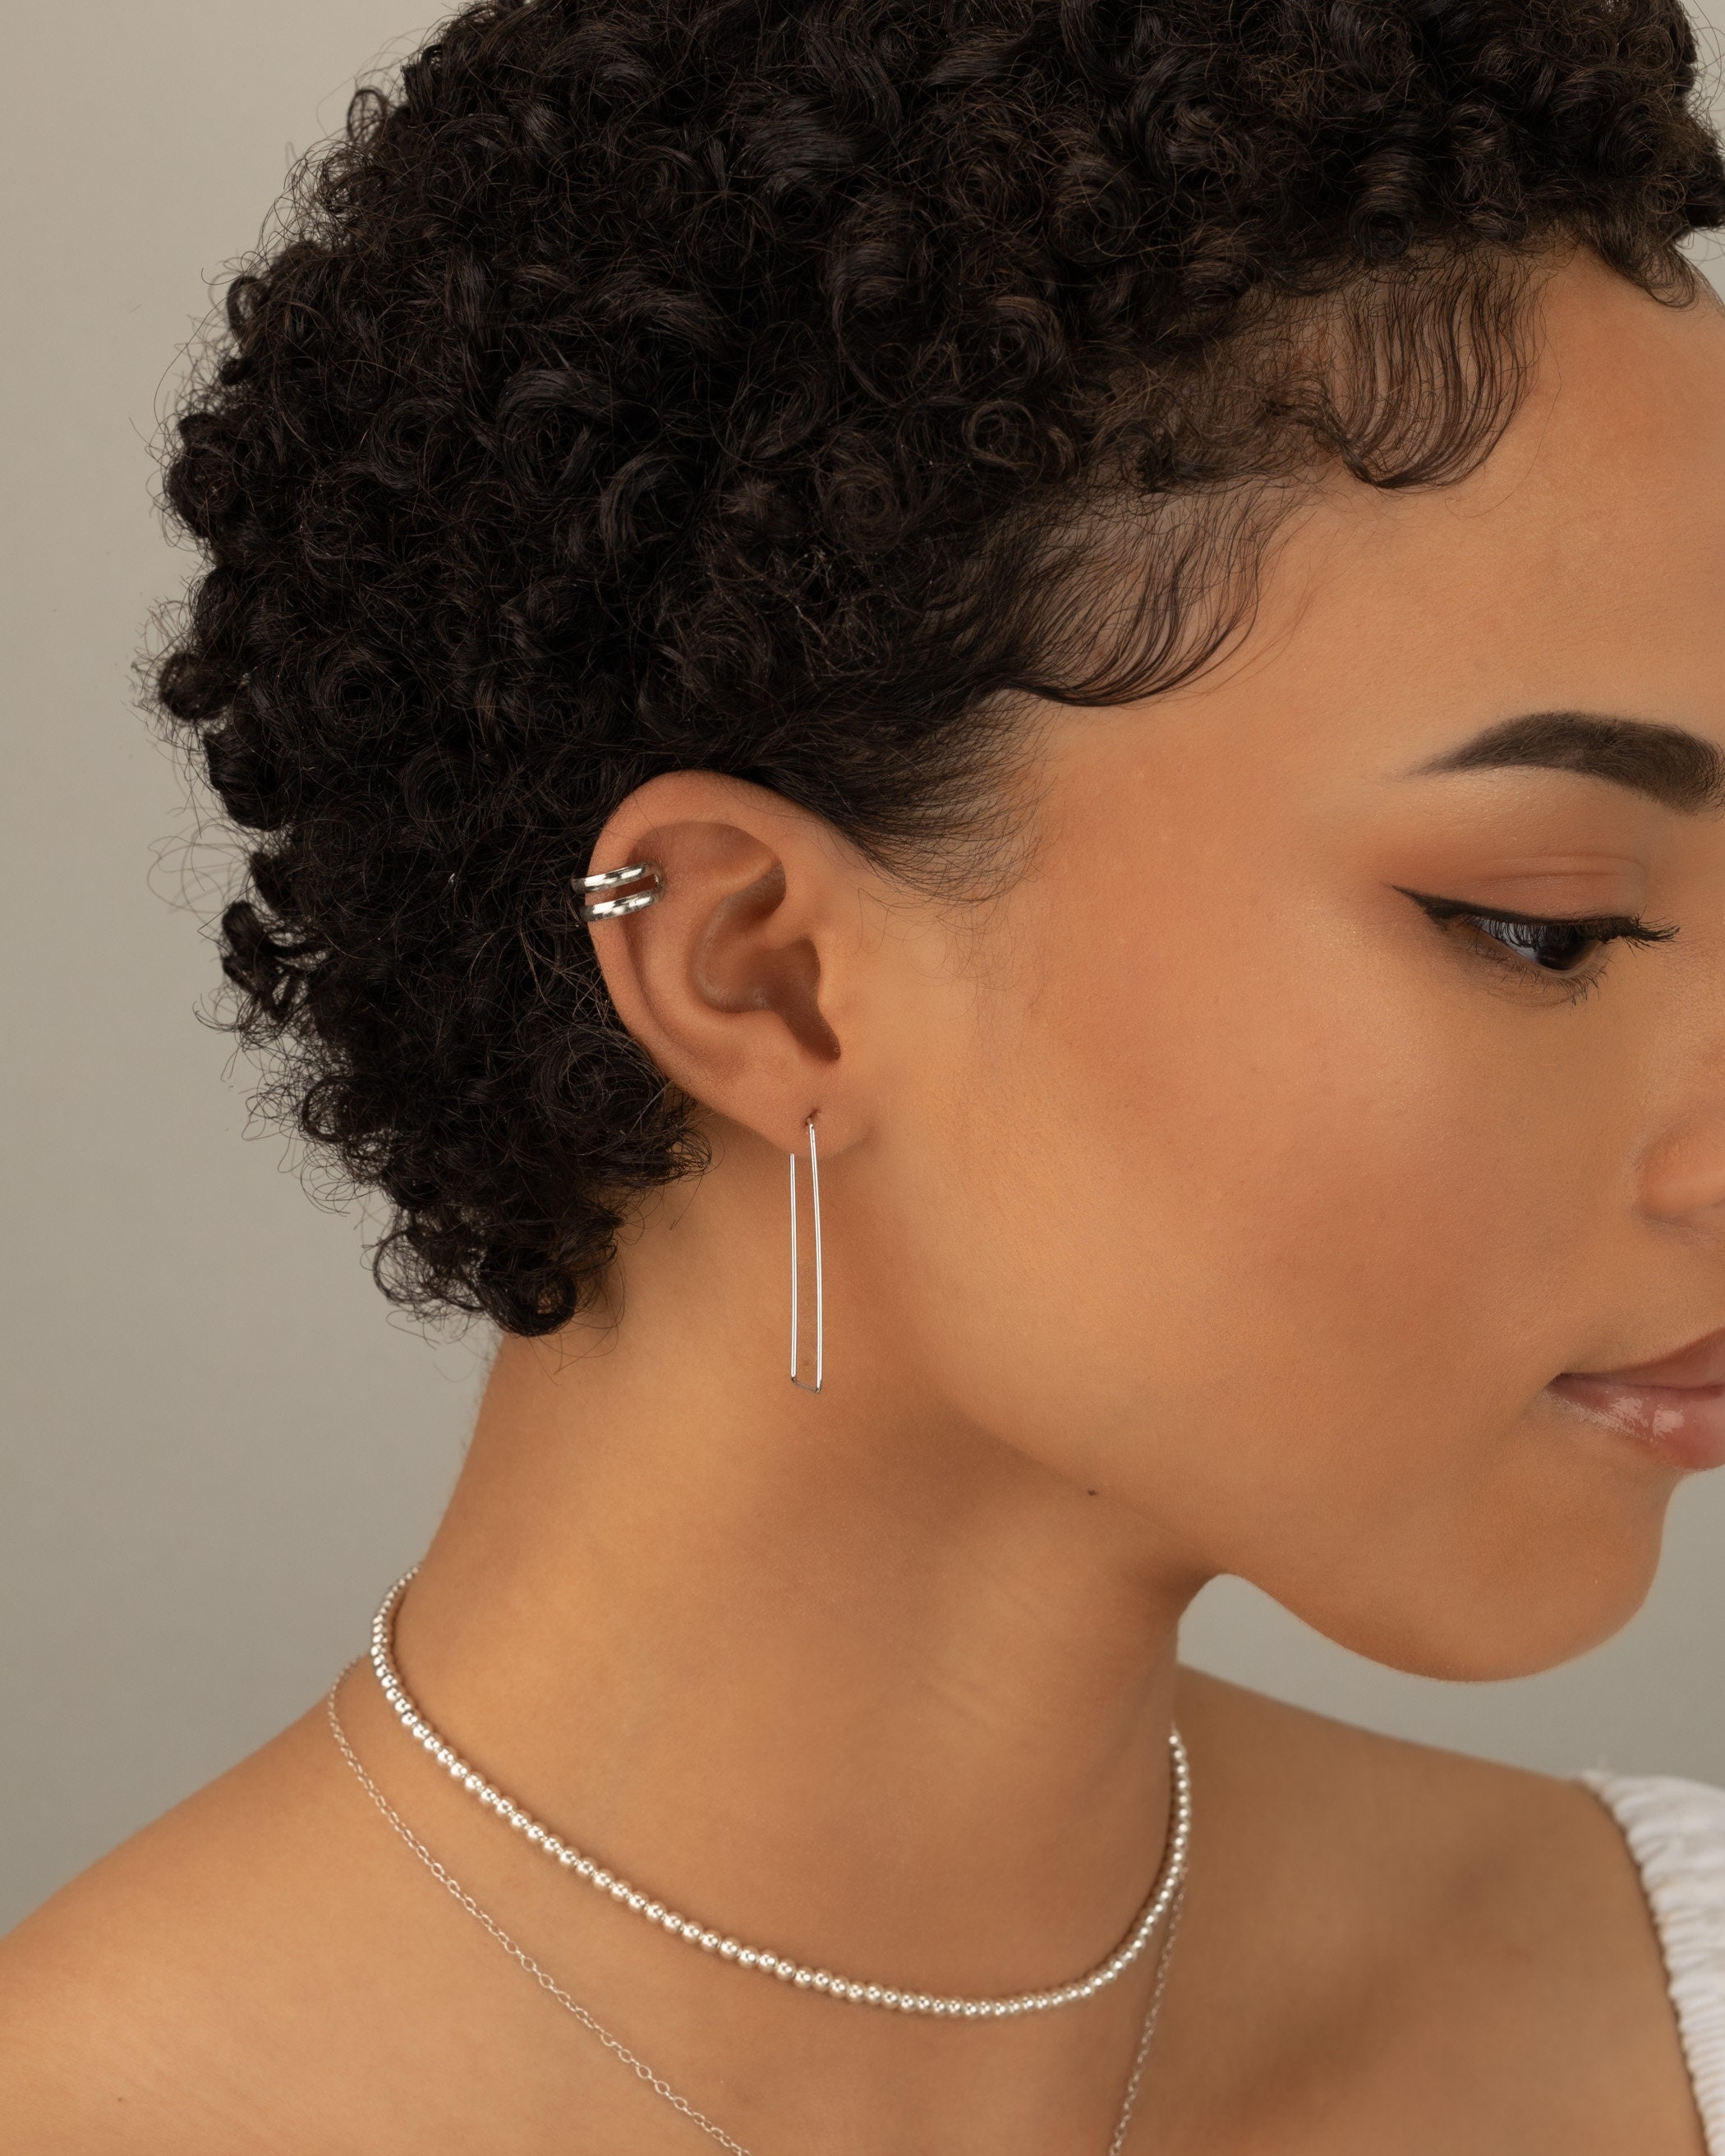  Fake Double Hoop Earrings for Single Pierced Ears in